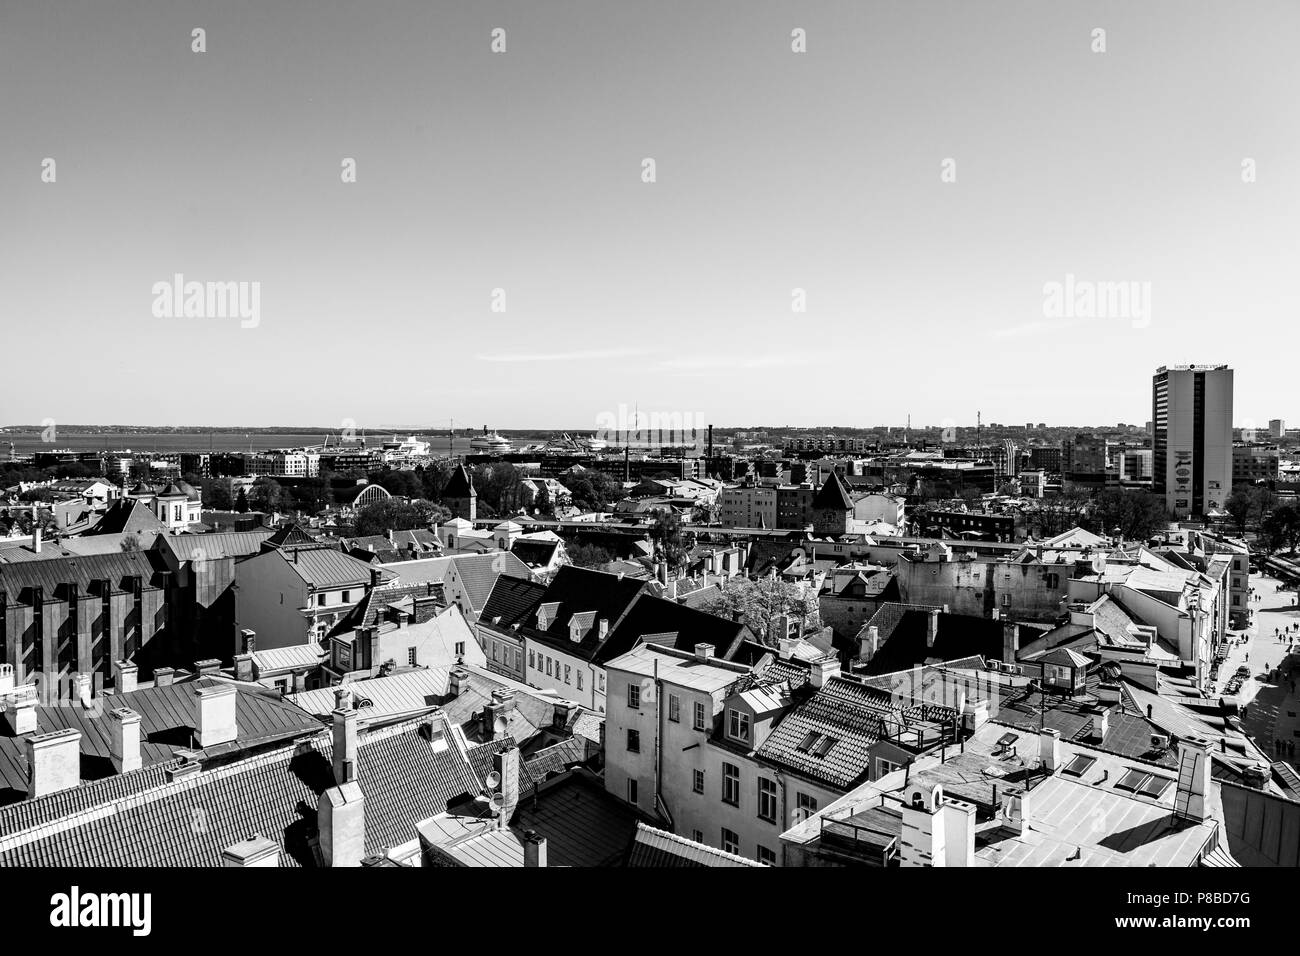 Landscape view of Tallin, Estonia Stock Photo